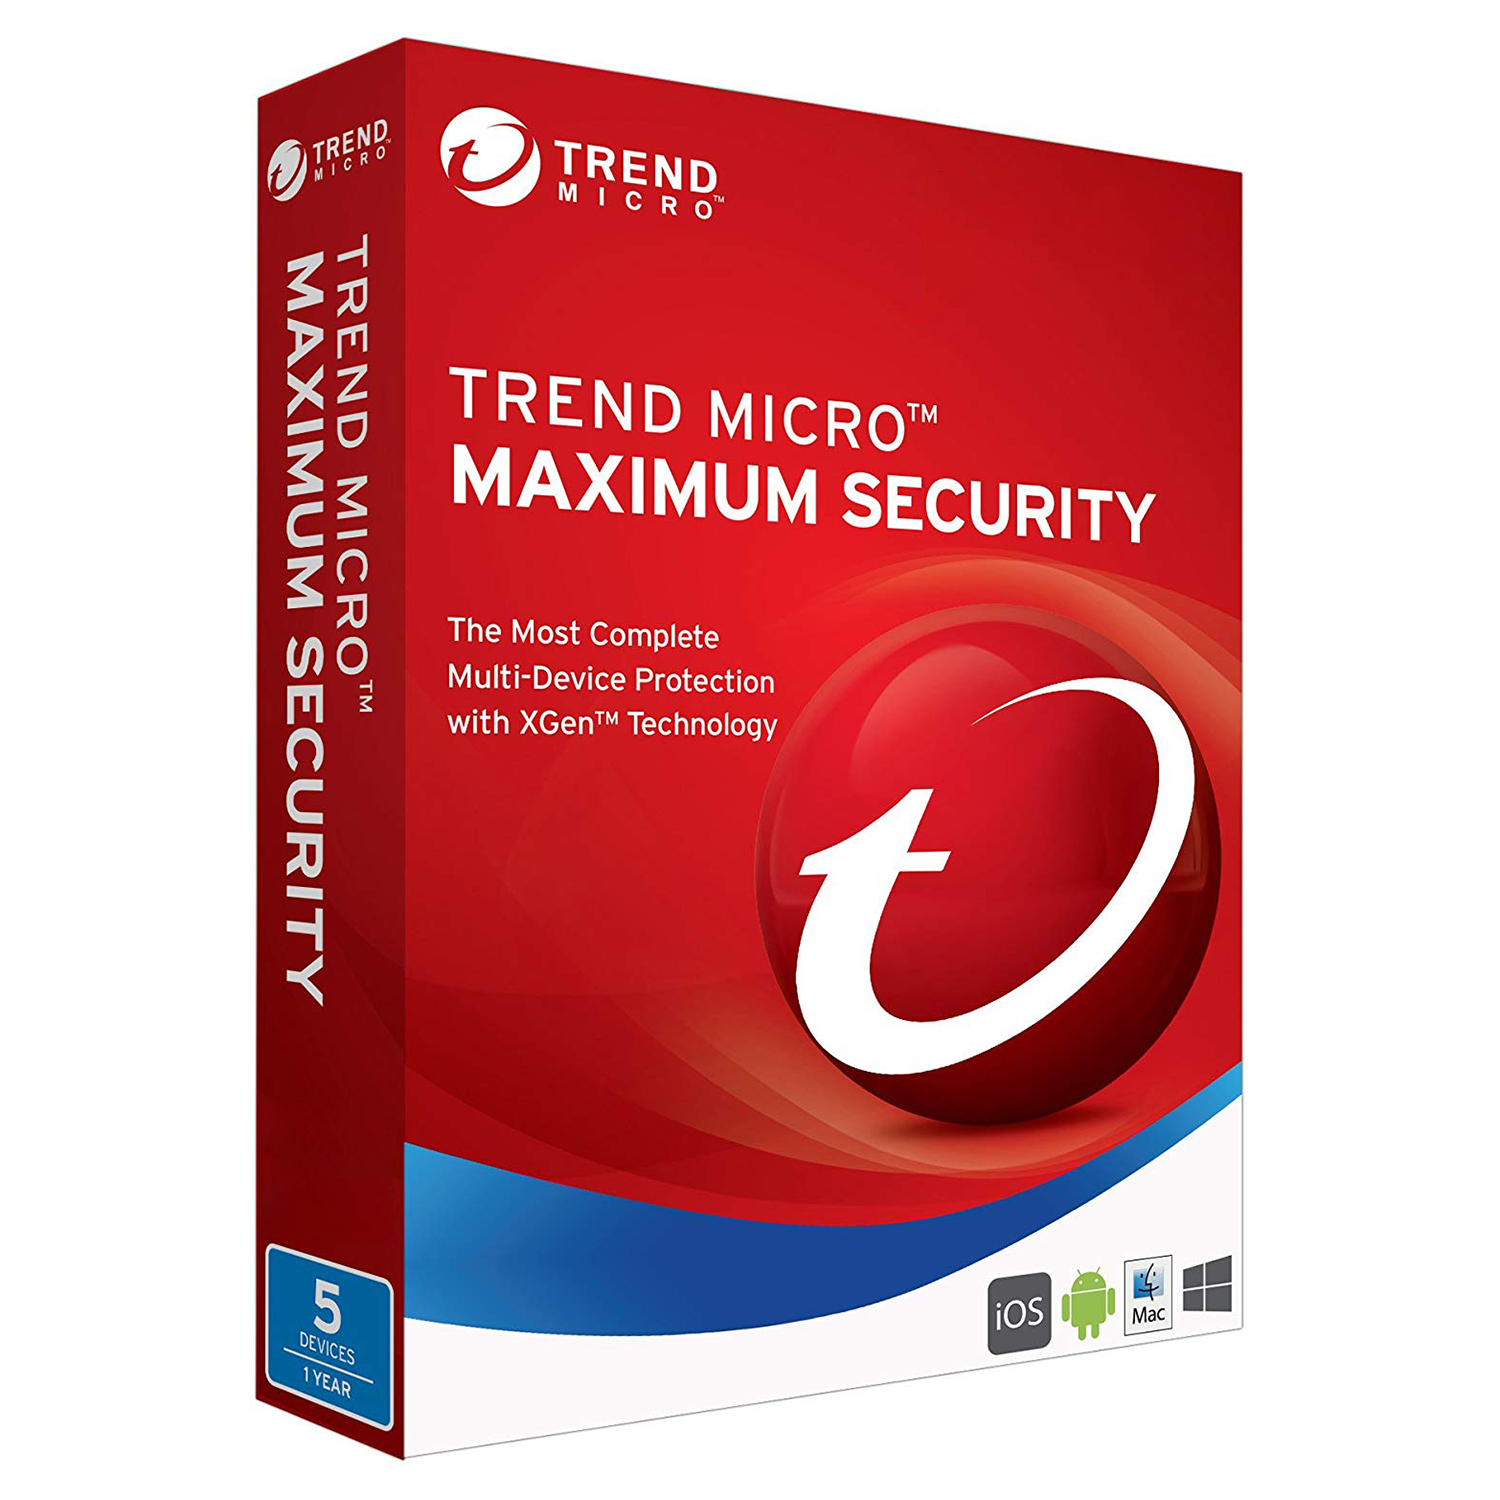 نرم افزار امنیتی ترند میکرو نسخه 5Maximum Security کاربر 1 ساله